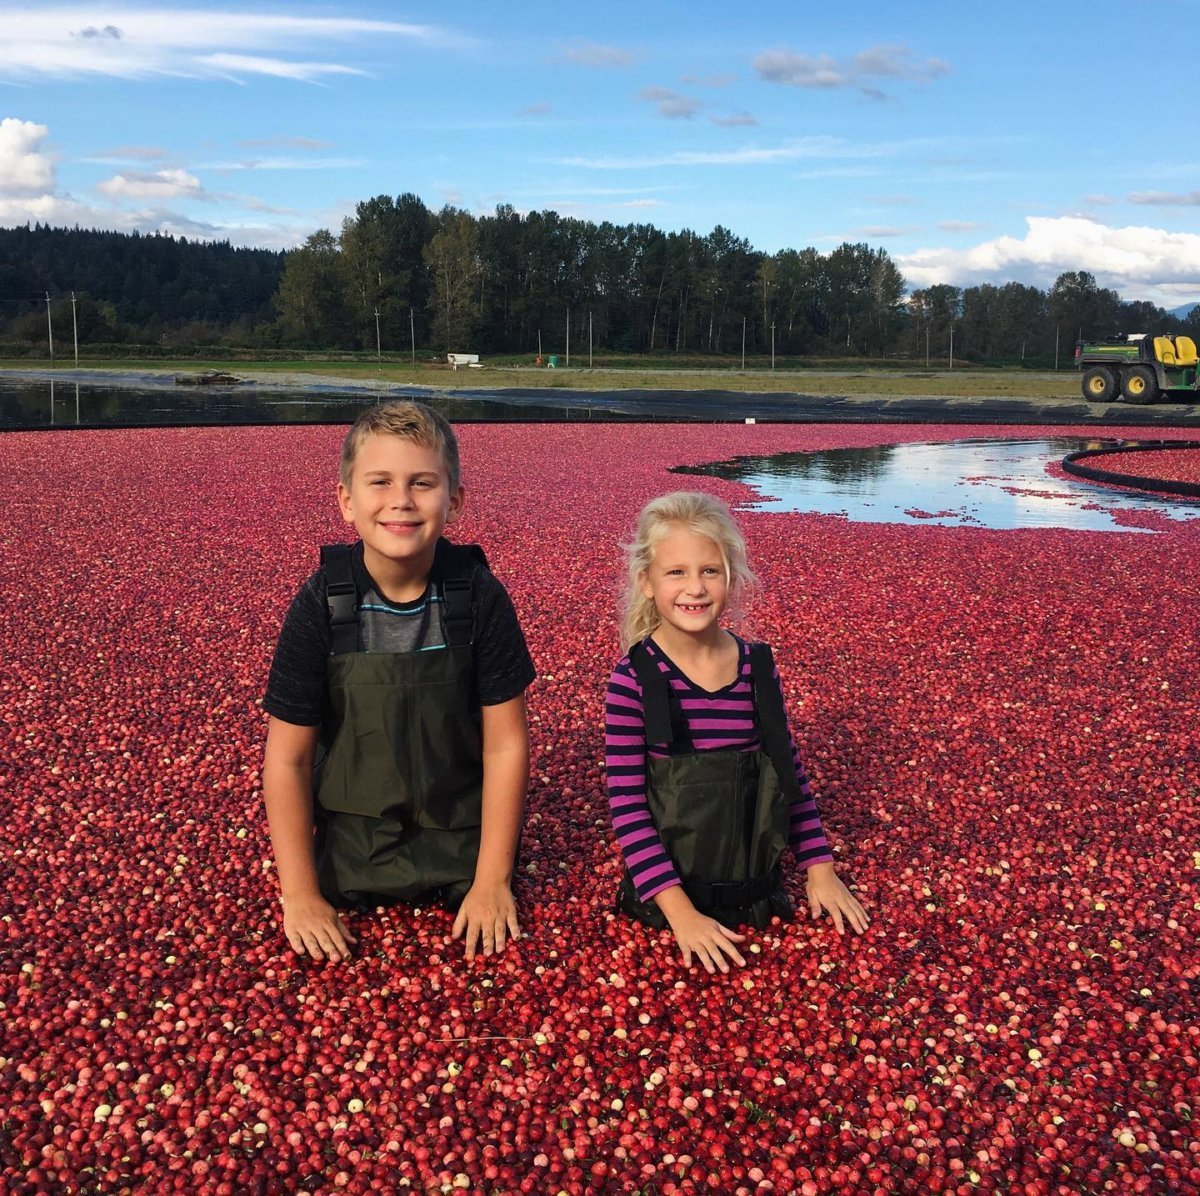 cranberry farm tours